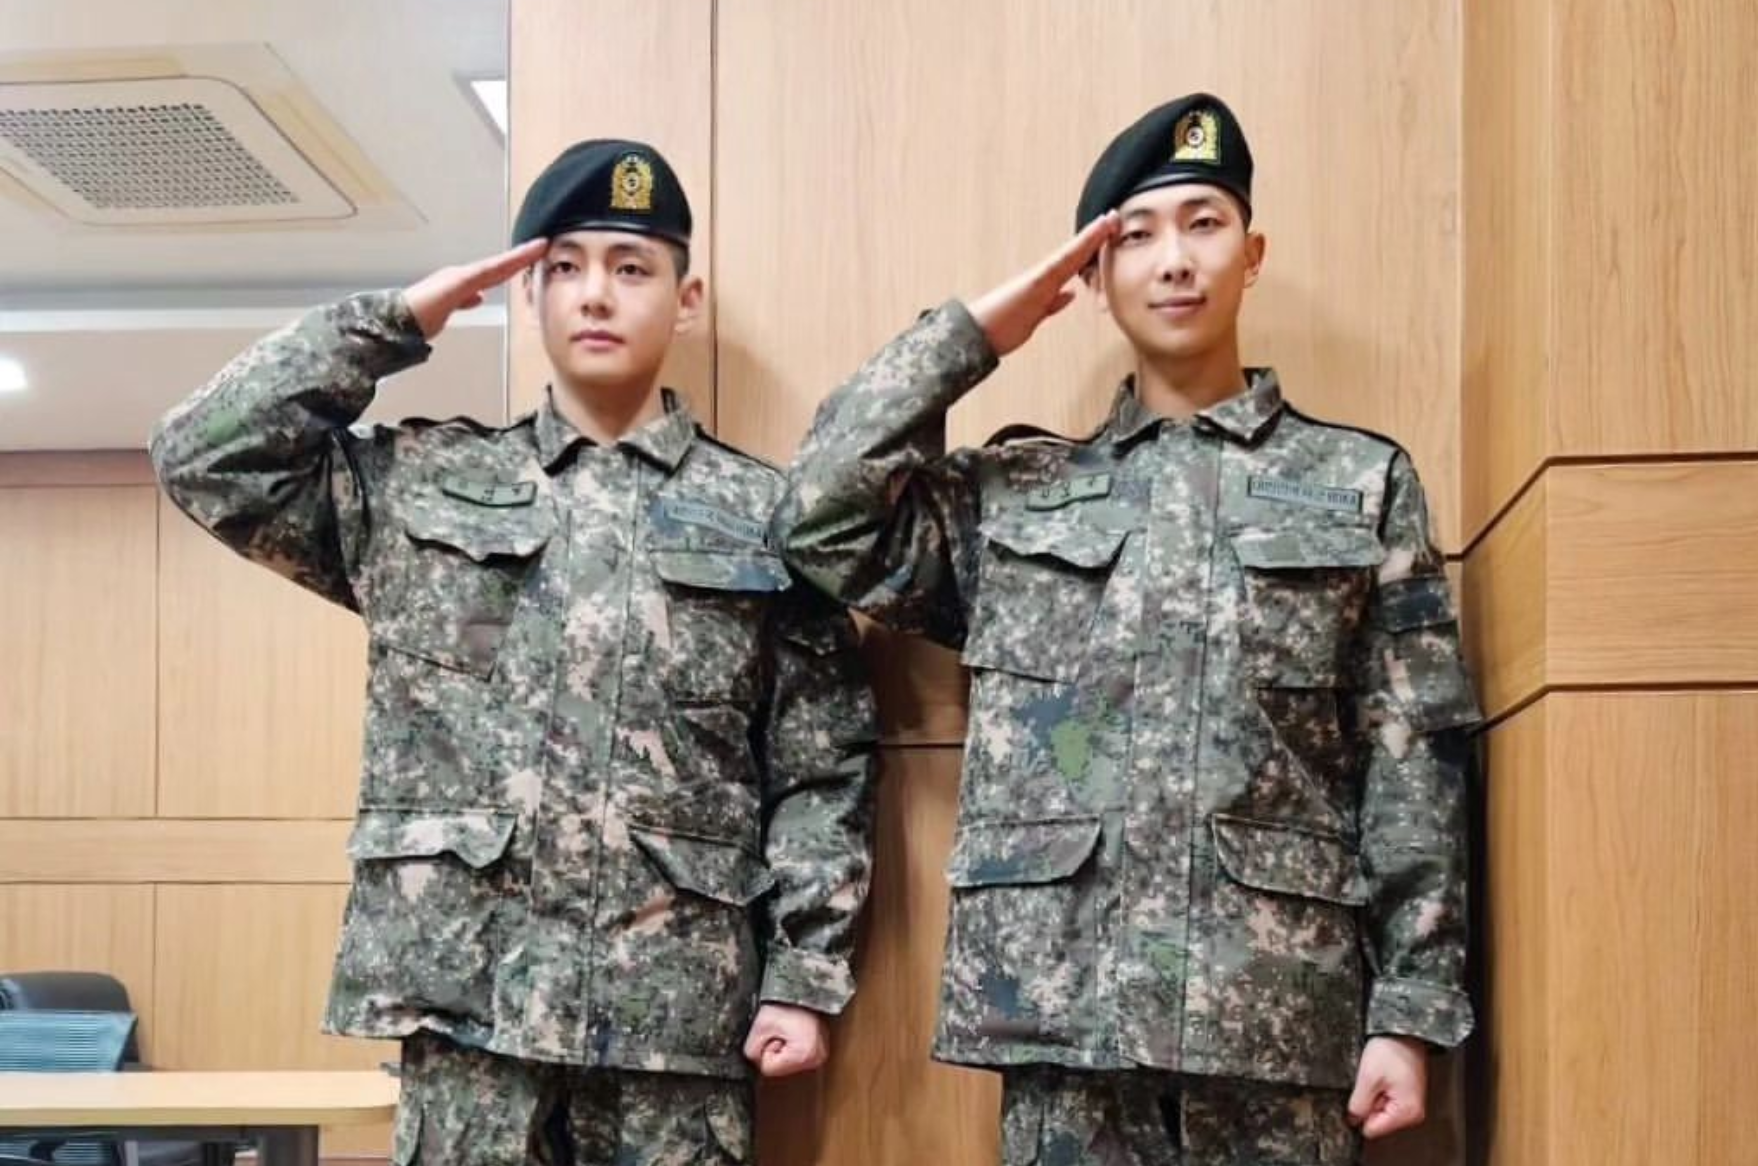 RM e V, do BTS, posam para fotos com uniforme militar: ‘Saudação!’